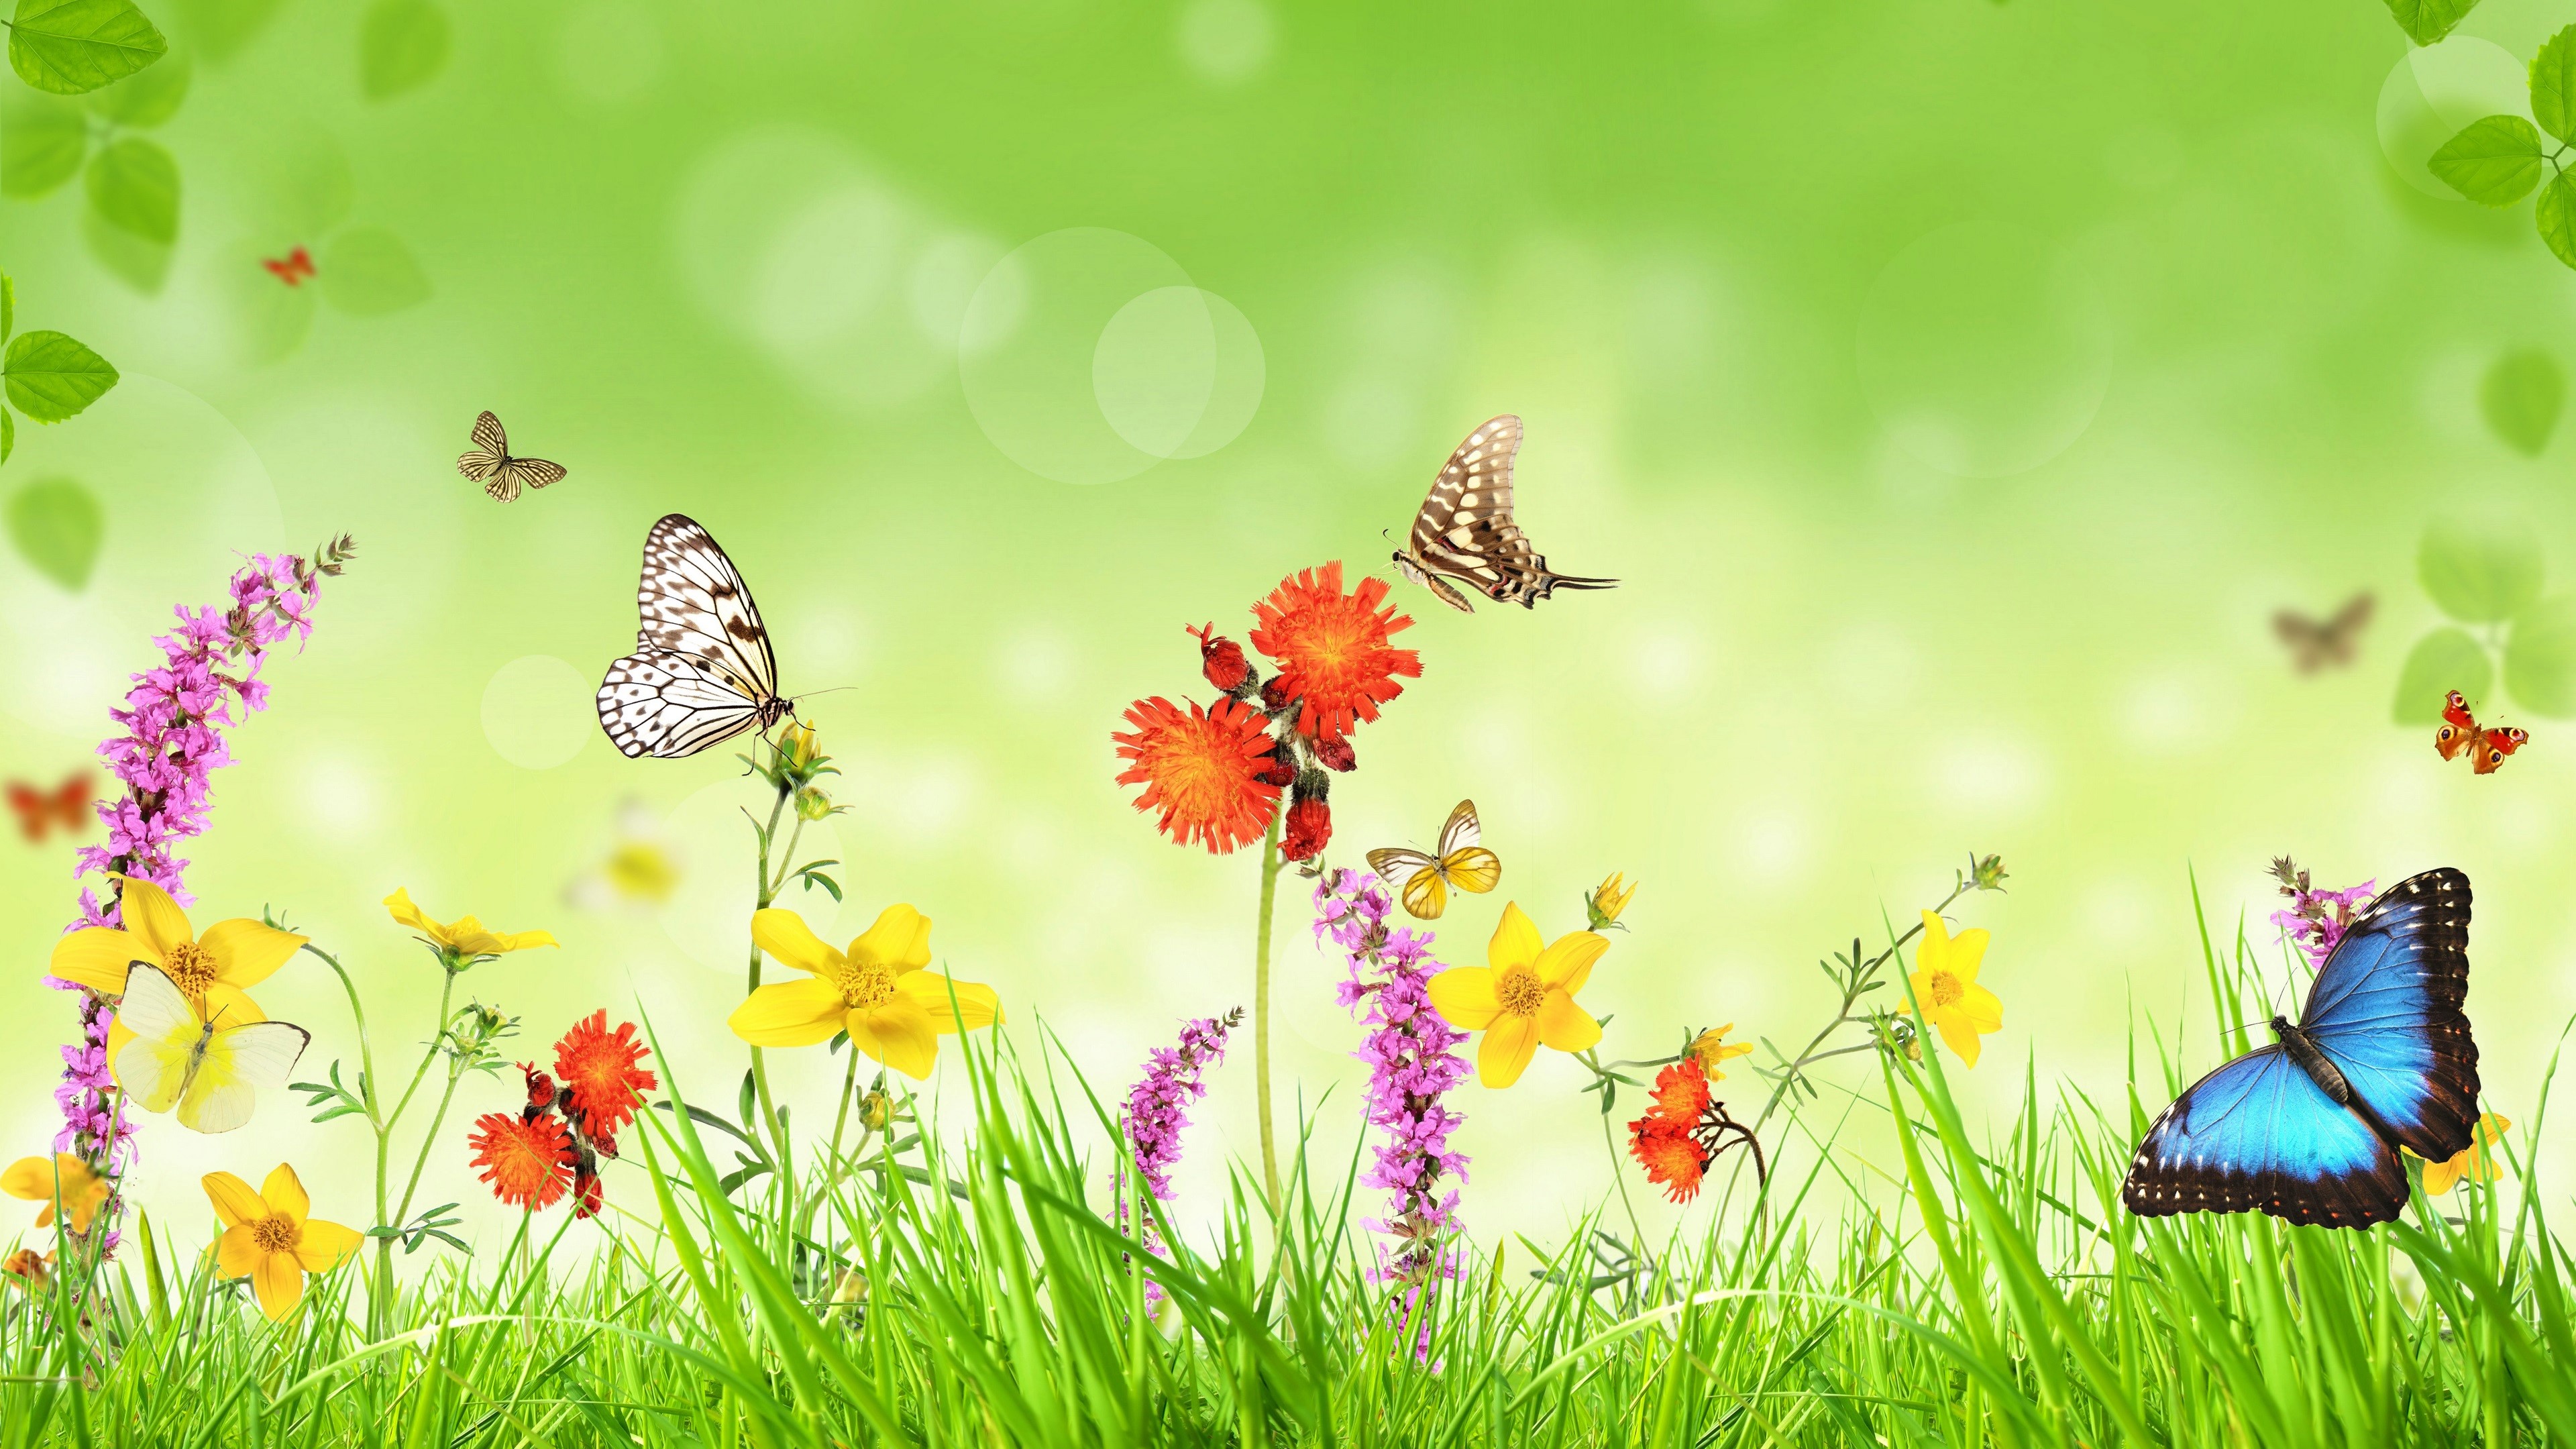 Скачать обои бесплатно Трава, Цветок, Бабочка, Красочный, Весна, Художественные картинка на рабочий стол ПК